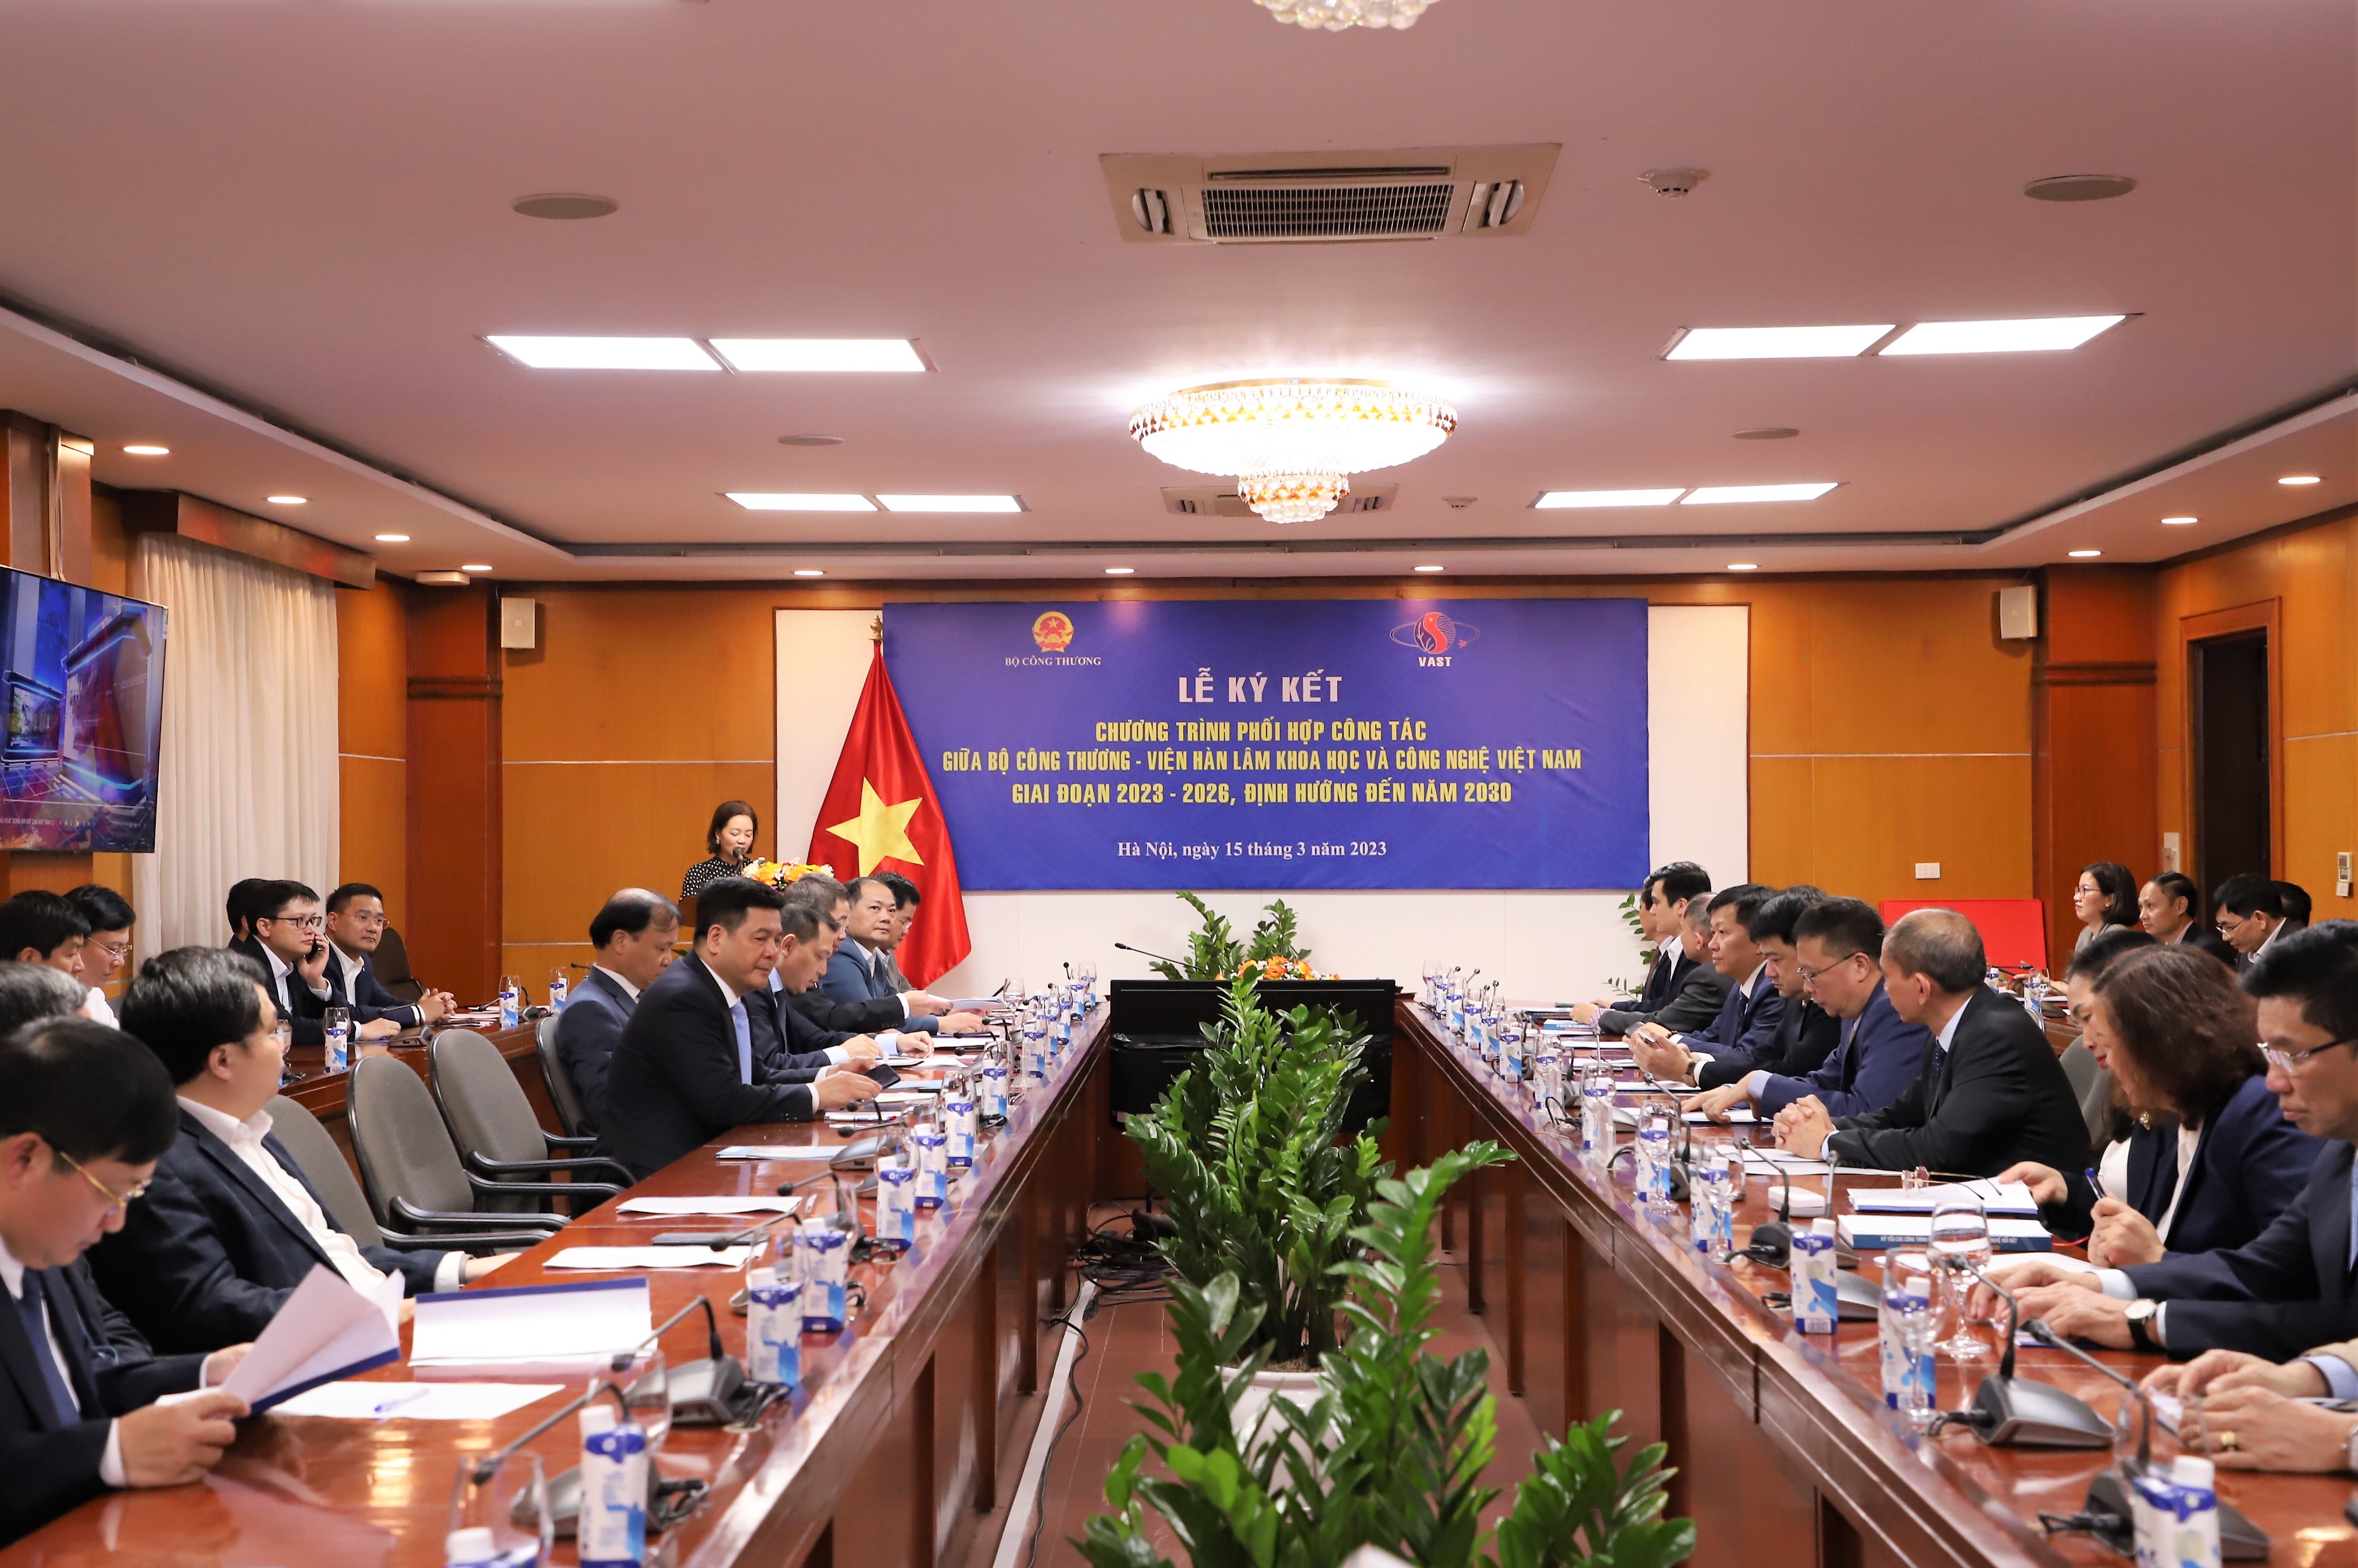 Lễ ký kết Chương trình phối hợp công tác giữa Bộ Công Thương – Viện Hàn lâm Khoa học và Công nghệ Việt Nam giai đoạn 2023-2026, định hướng đến năm 2030